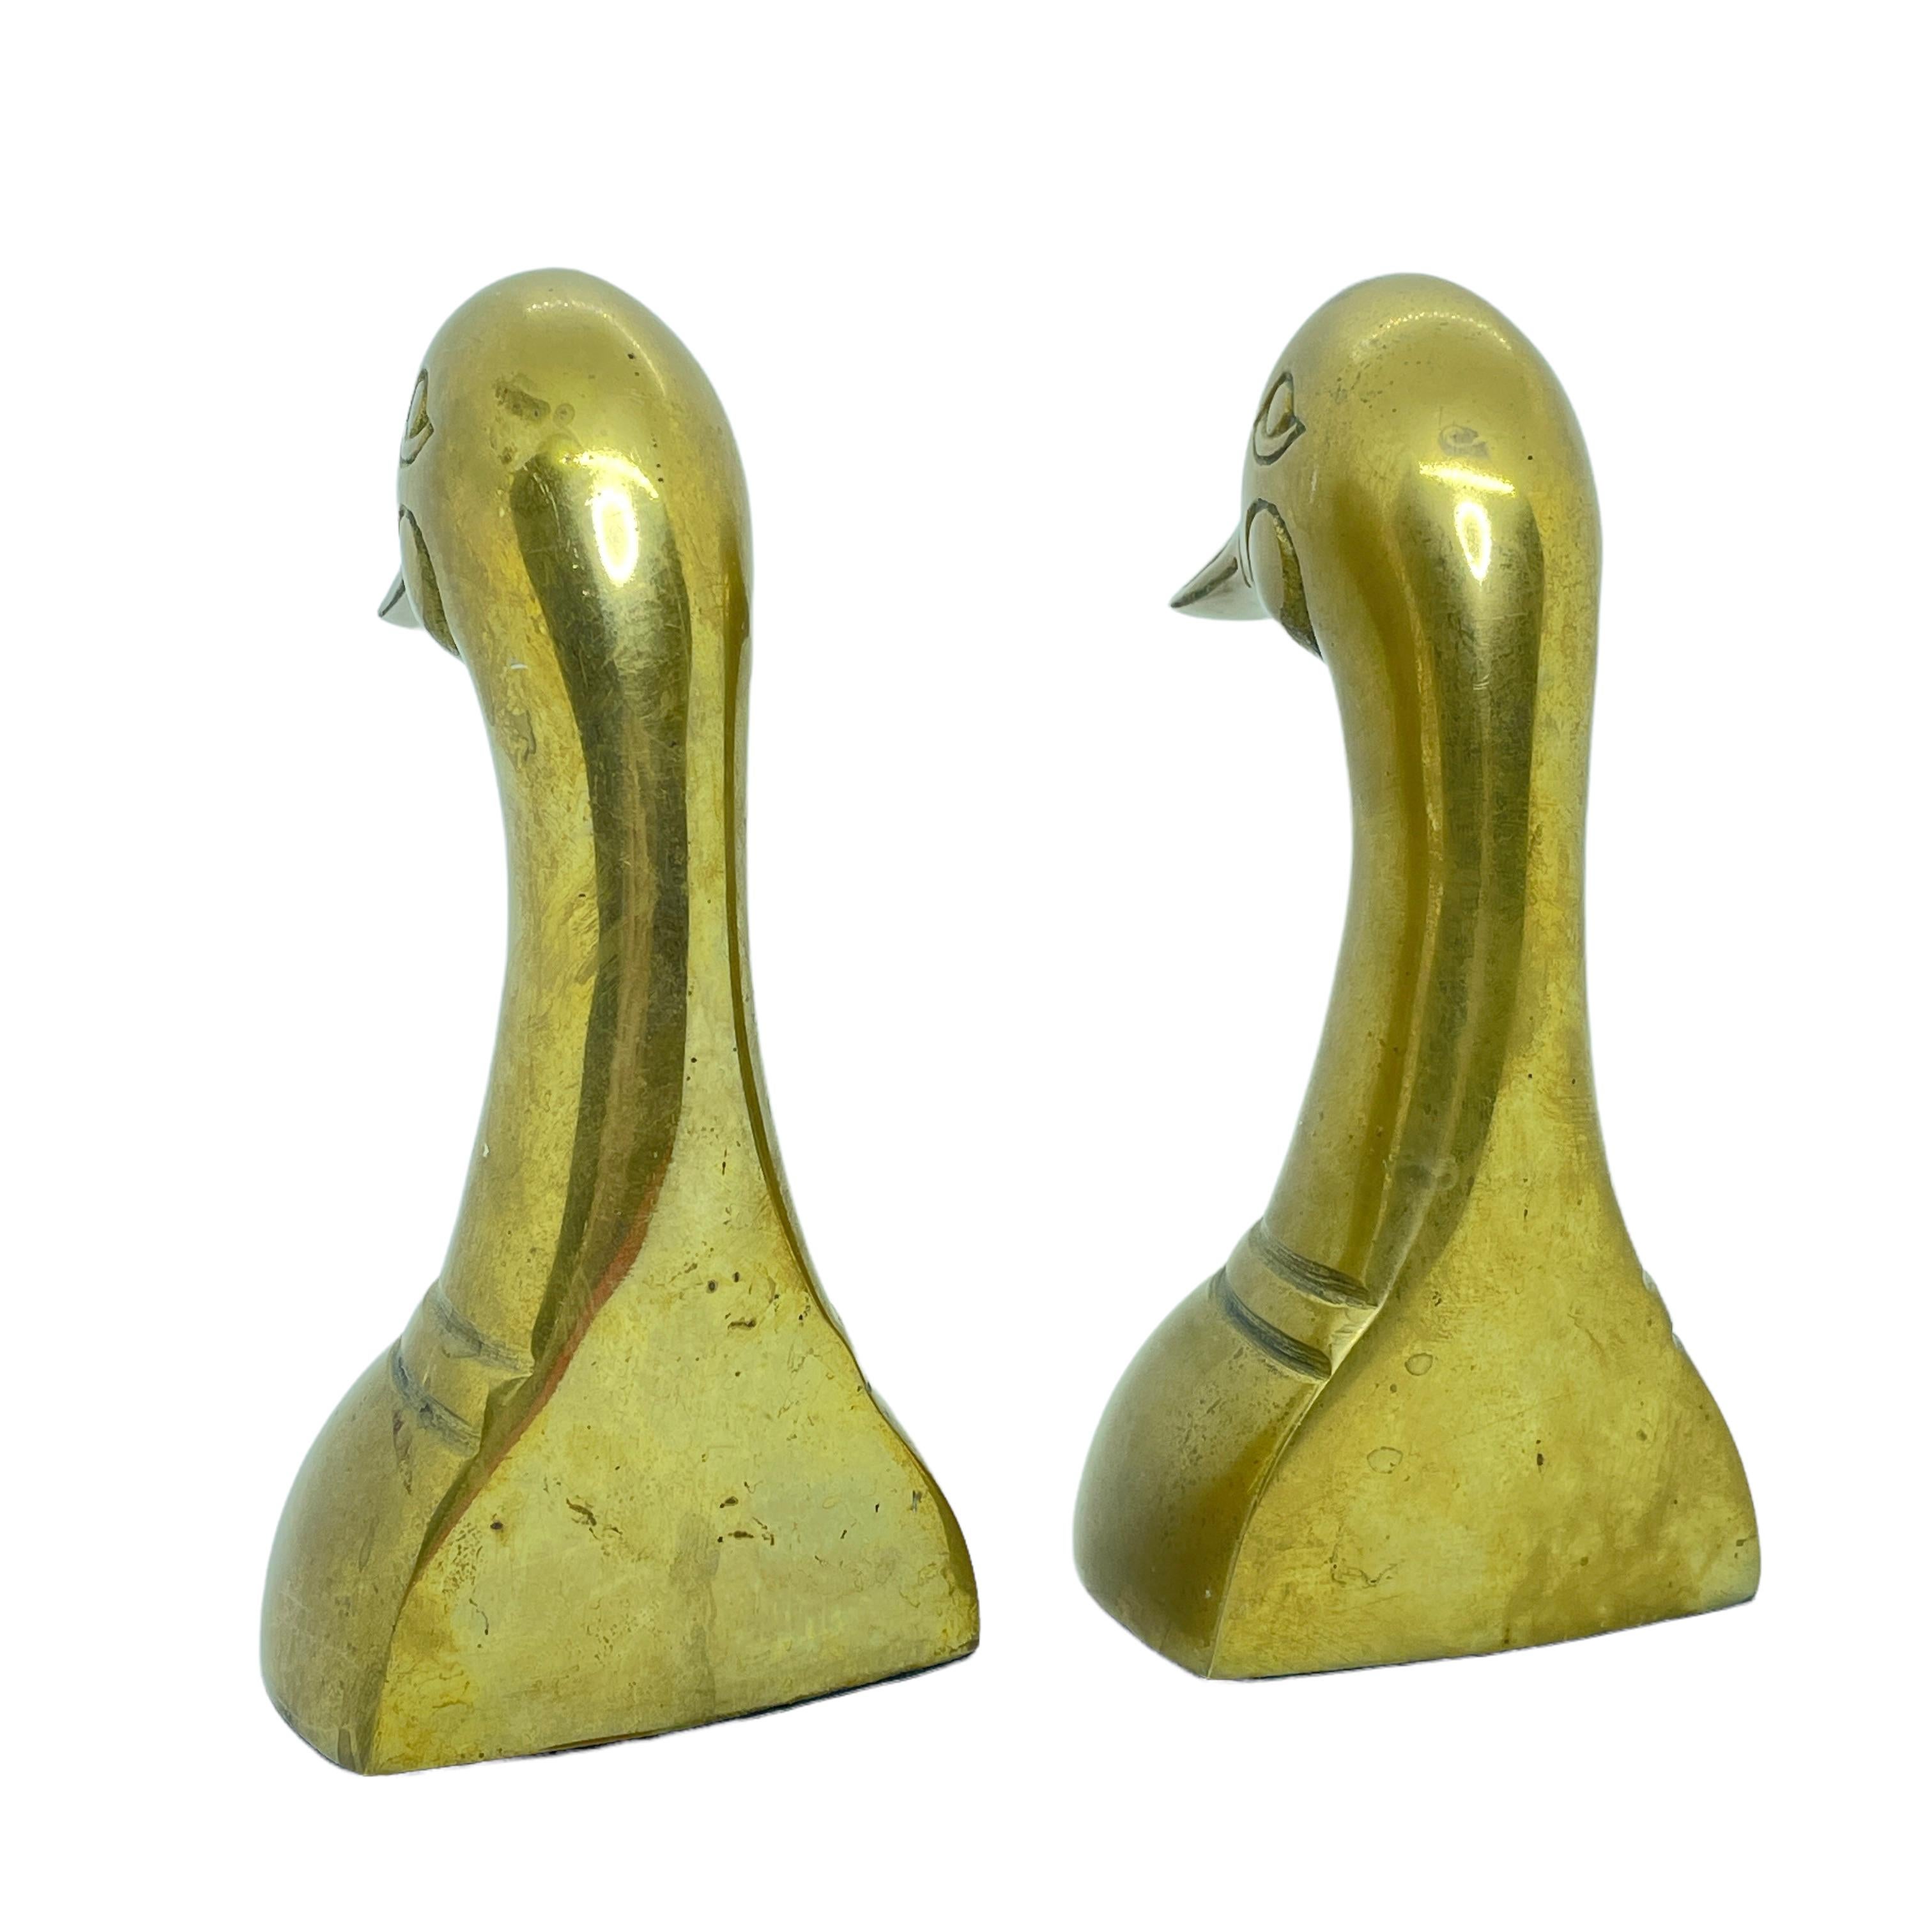 Vintage Paar polierte Enten-Buchstützen aus Messingguss, um 1950. Paar dekorative Enten-Buchstützen aus poliertem Messing im Sarried-Stil. Sehr solide und schwer. Sie eignen sich hervorragend zum Halten von Büchern im Regal, als Briefbeschwerer auf